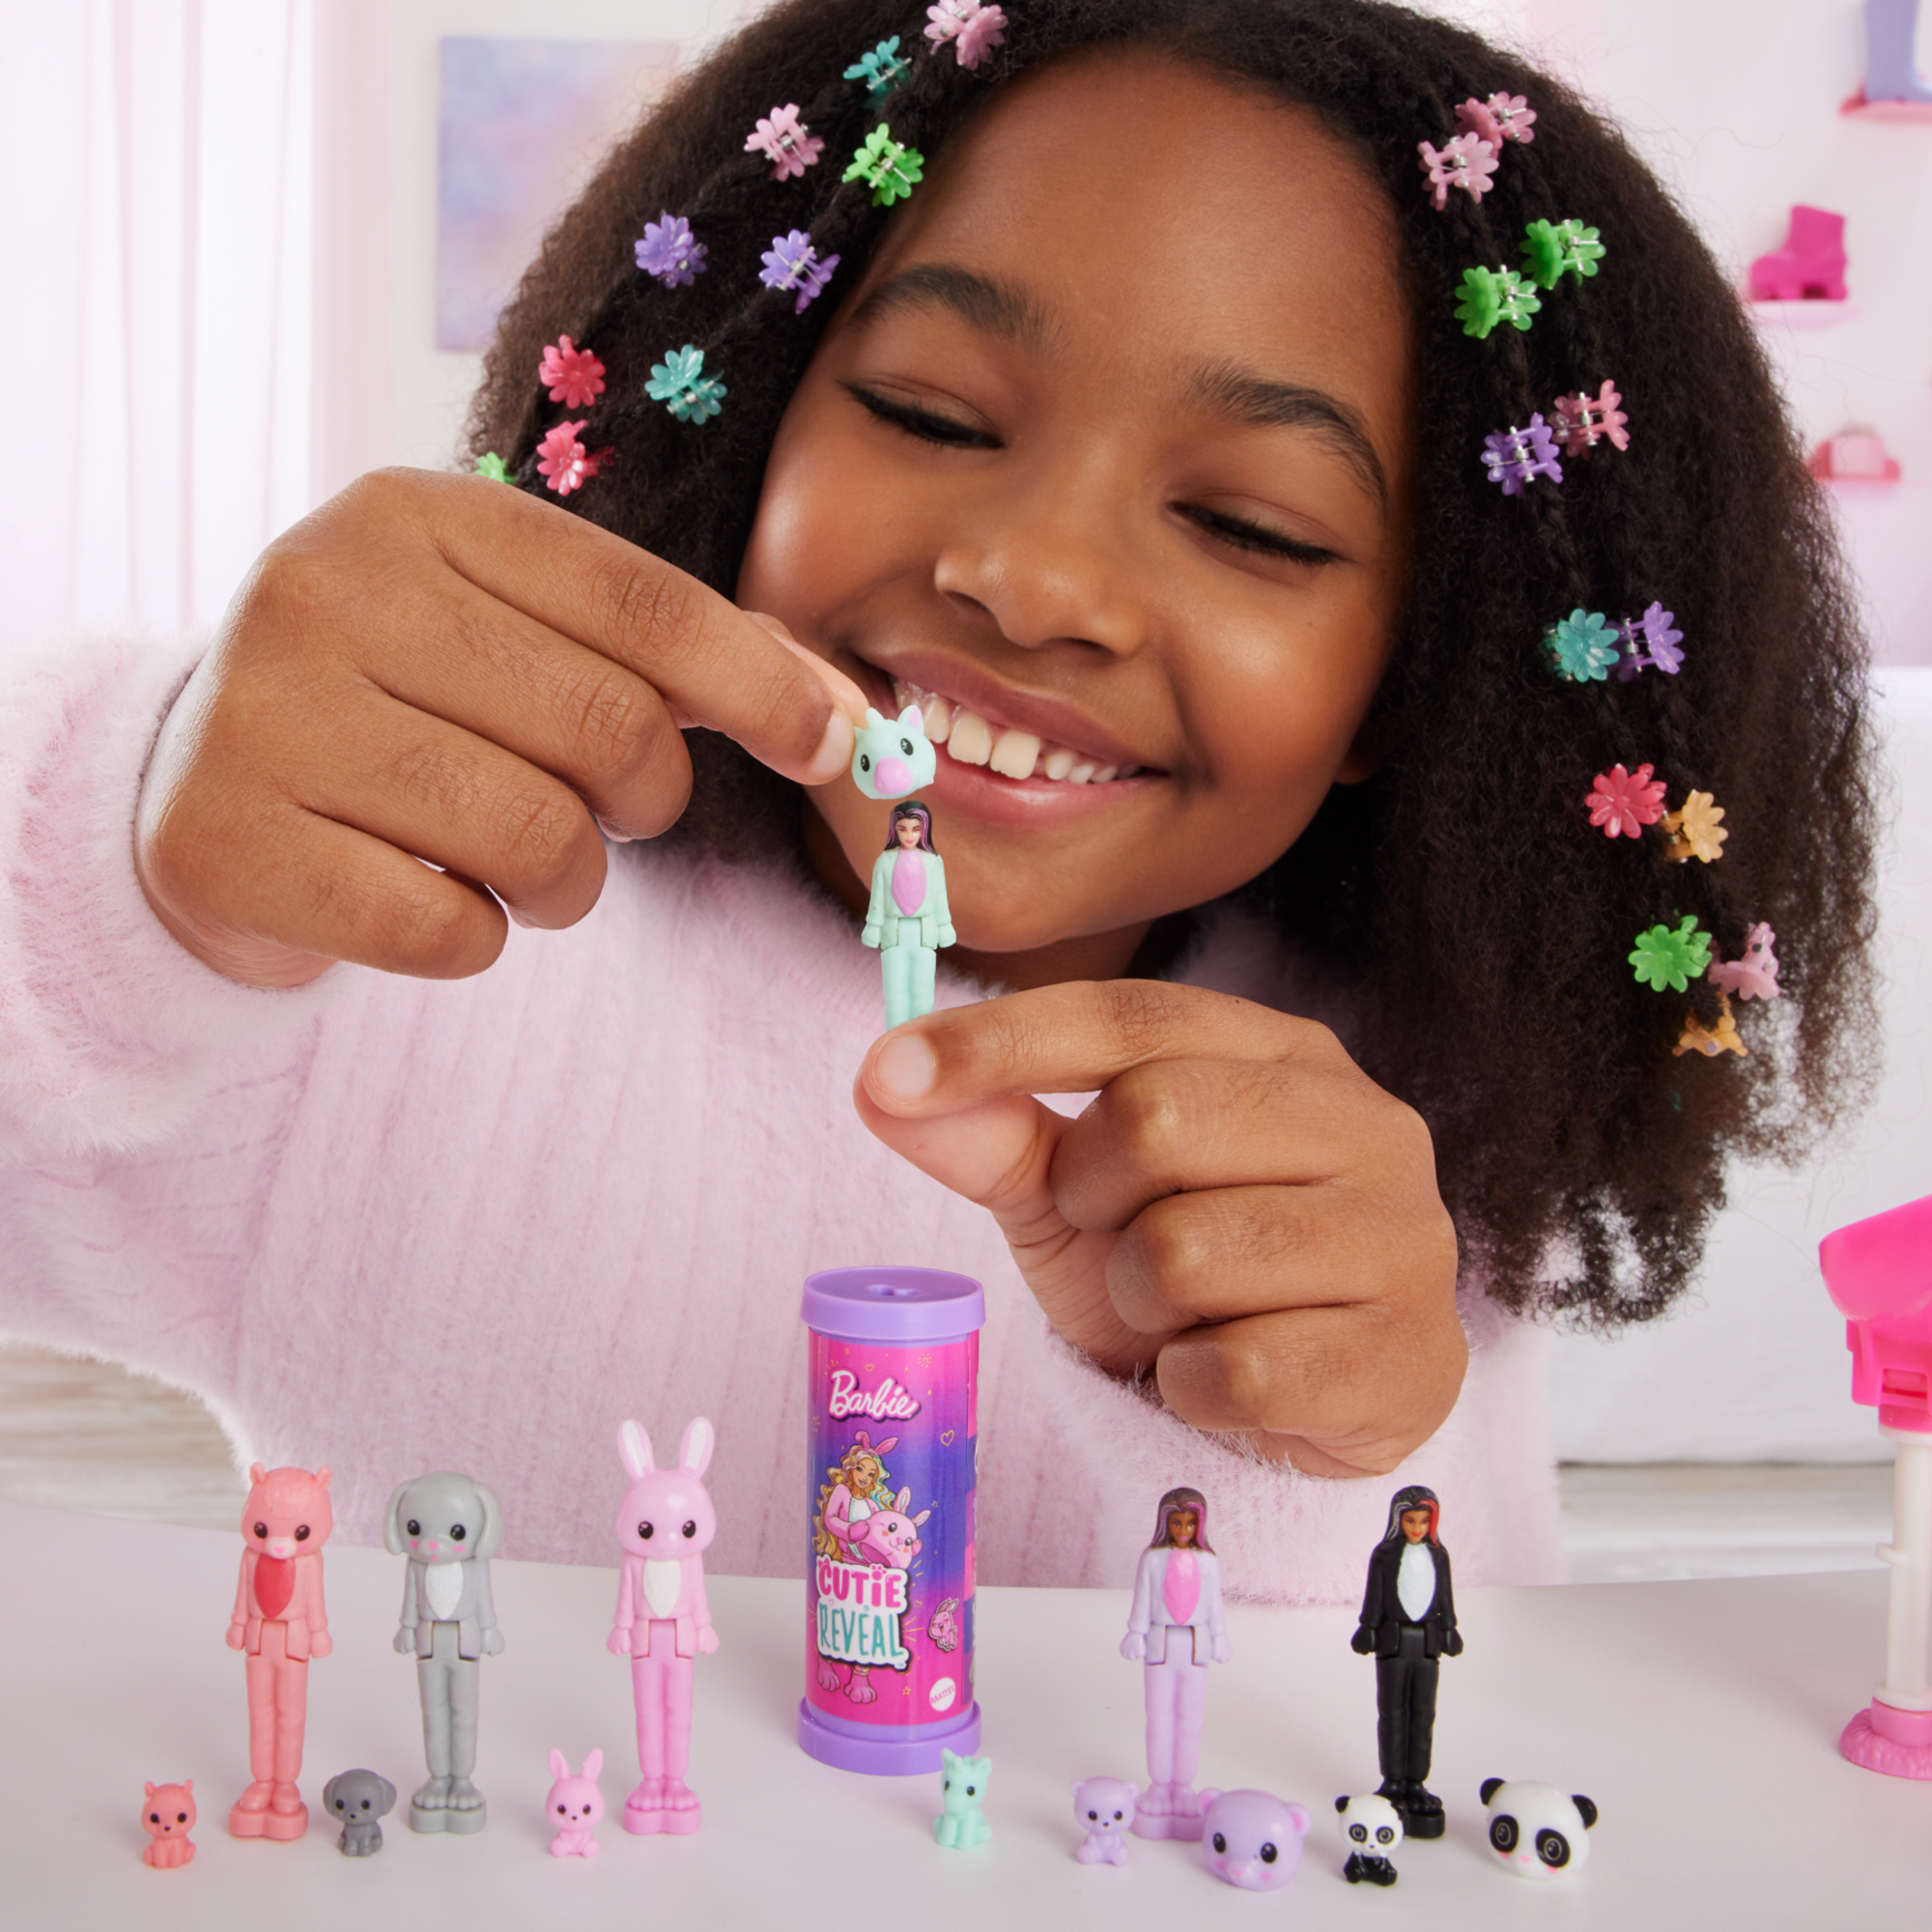 Mini barbieland - cutie reveal serie color - mini bambola con costume in peluche e cucciolo - Barbie